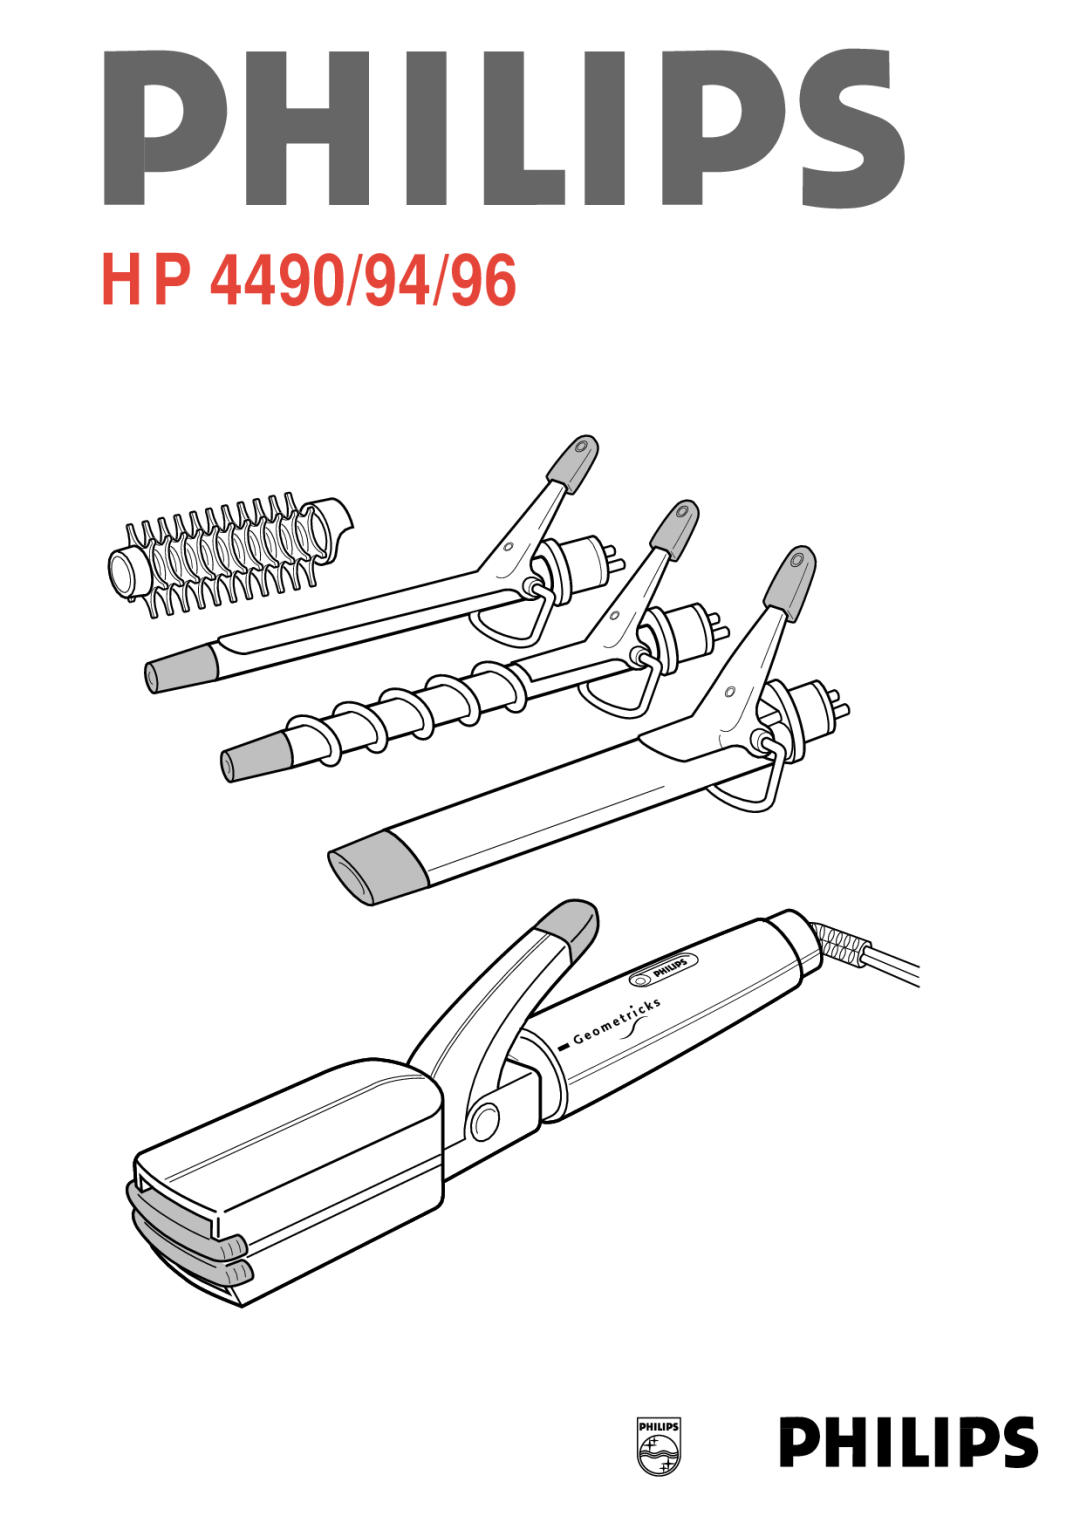 Philips HP 4490, HP 4494, HP 4496 manual HP 4490/94/96 